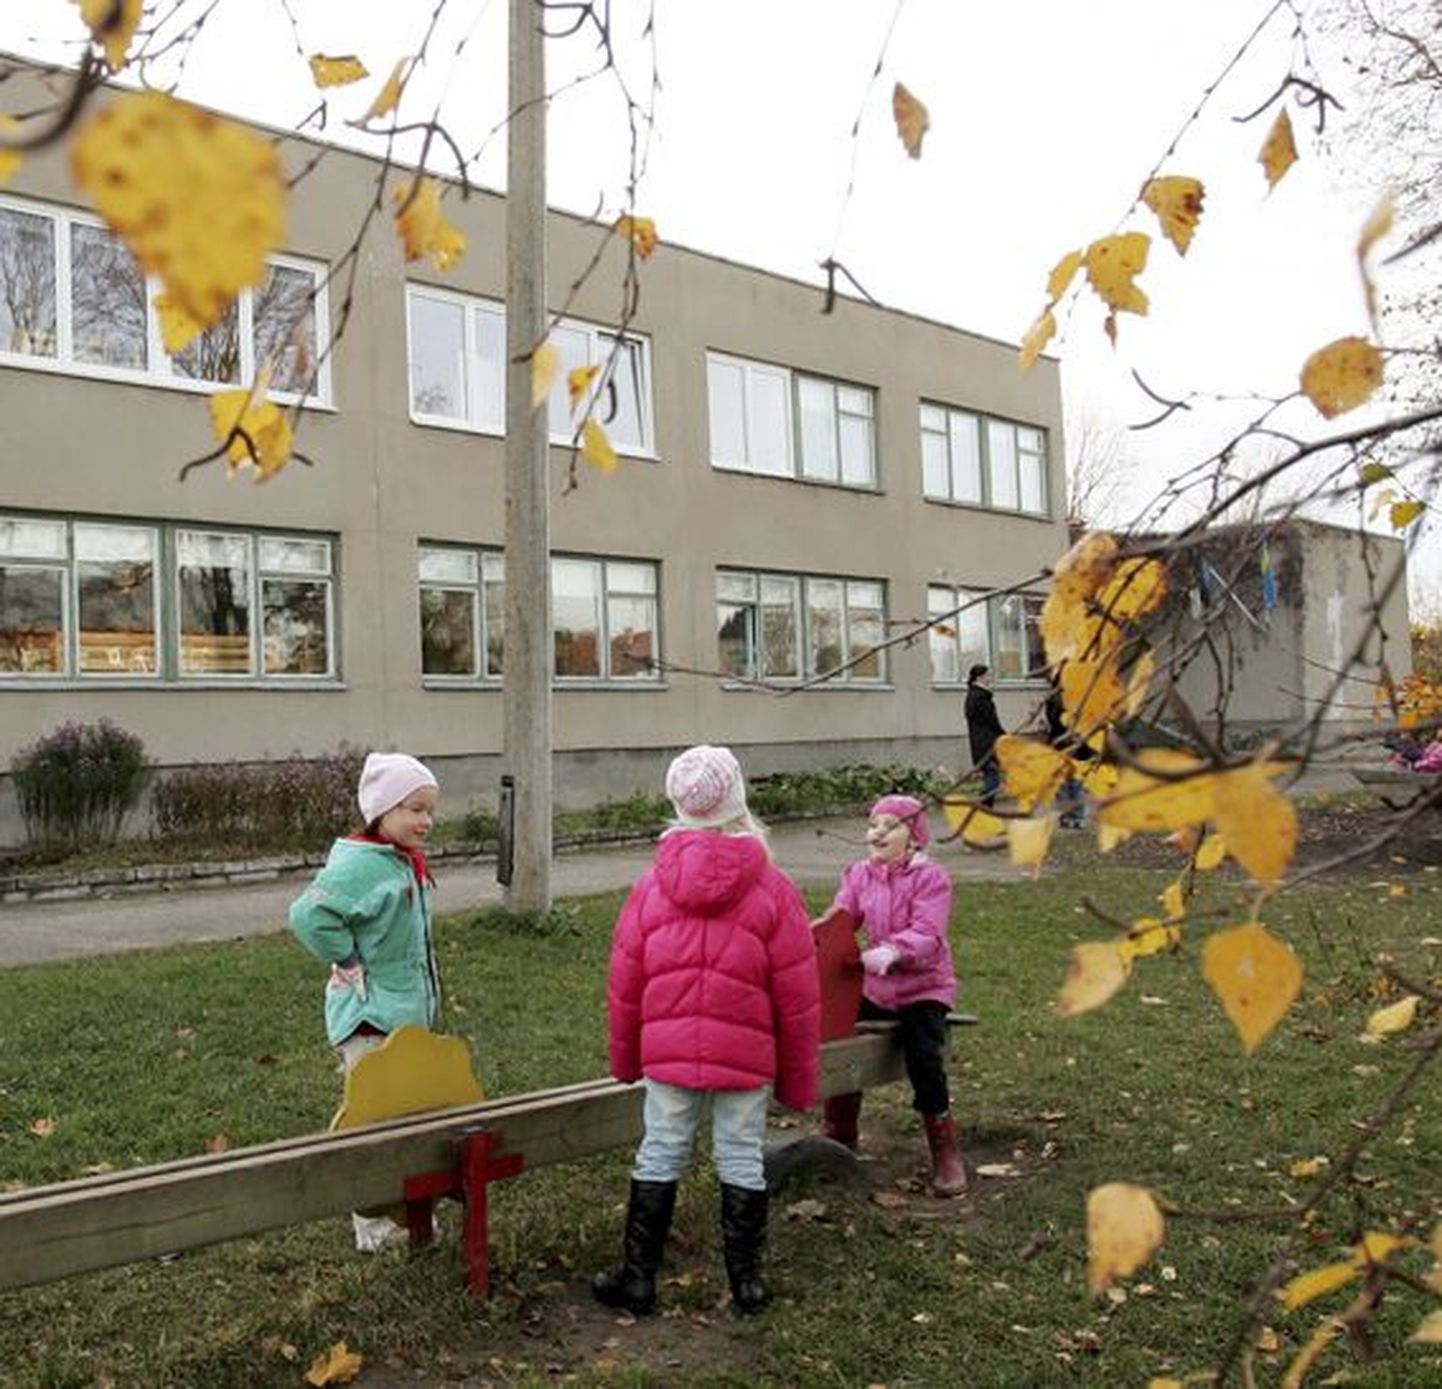 Rakvere linna üks suuremaid investeeringuid on algkooli hoone renoveerimine energiasäästlikuks lasteaiaks, mis saab teoks Šveitsi fondide toel.